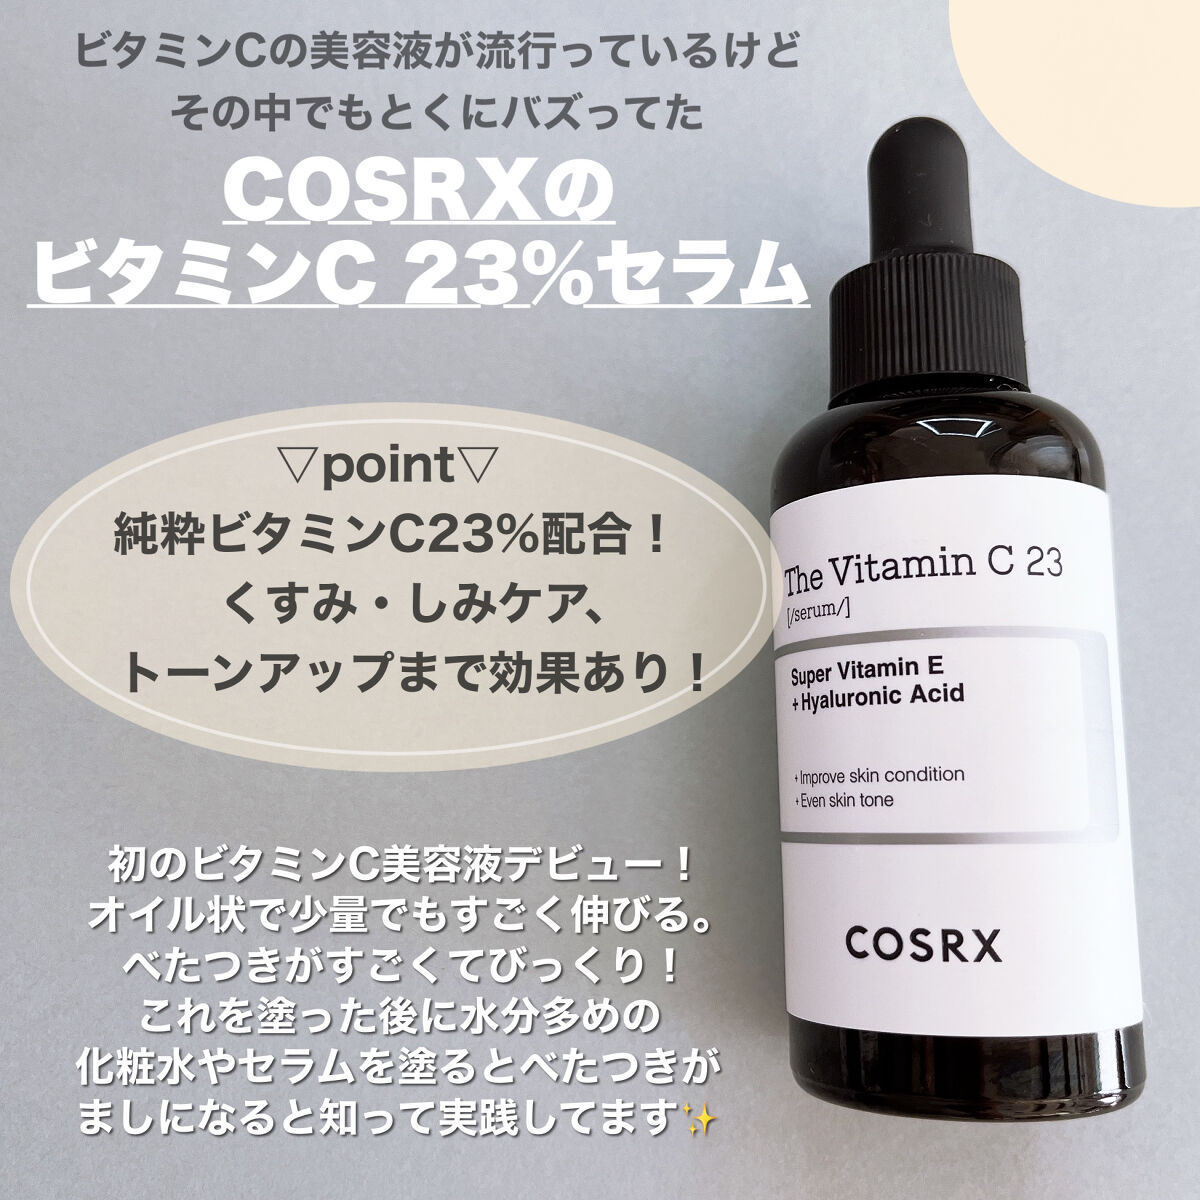 COSRX ビタミンC23